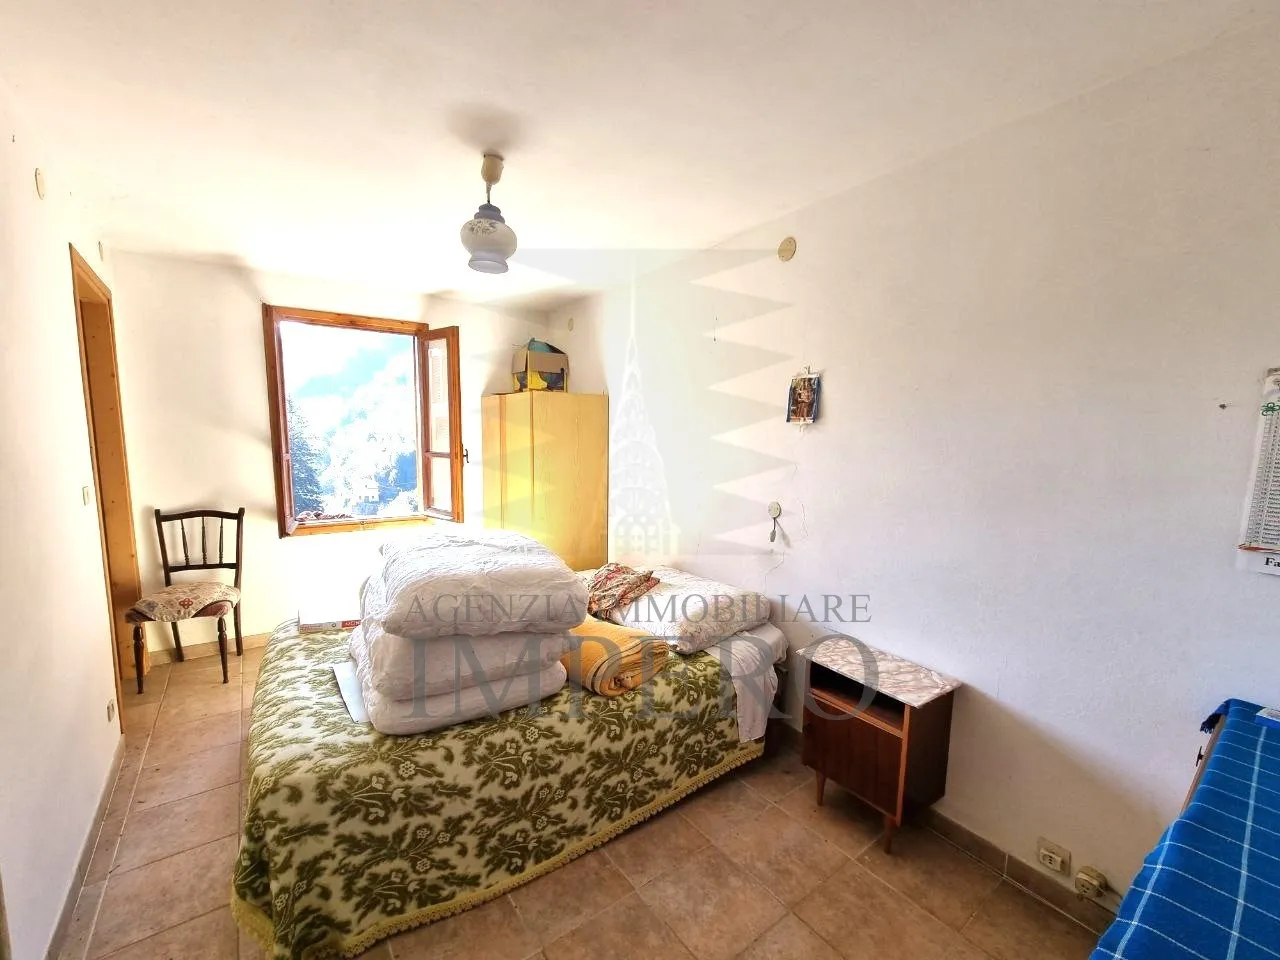 Immagine per casa in vendita a Pigna via Ausegno 18